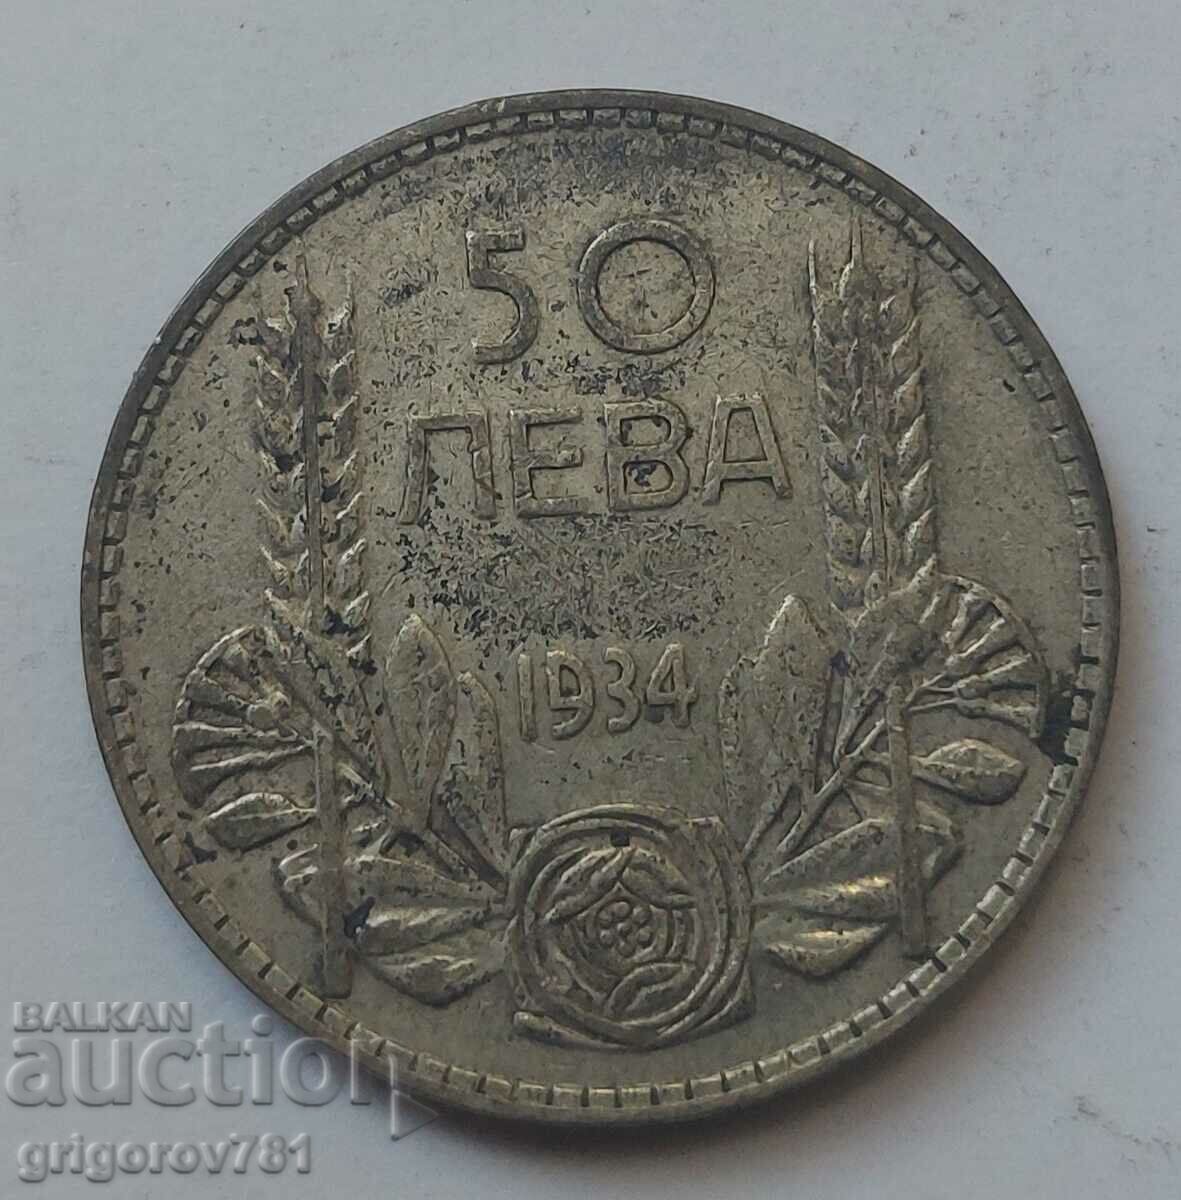 50 leva silver Bulgaria 1934 - silver coin #17